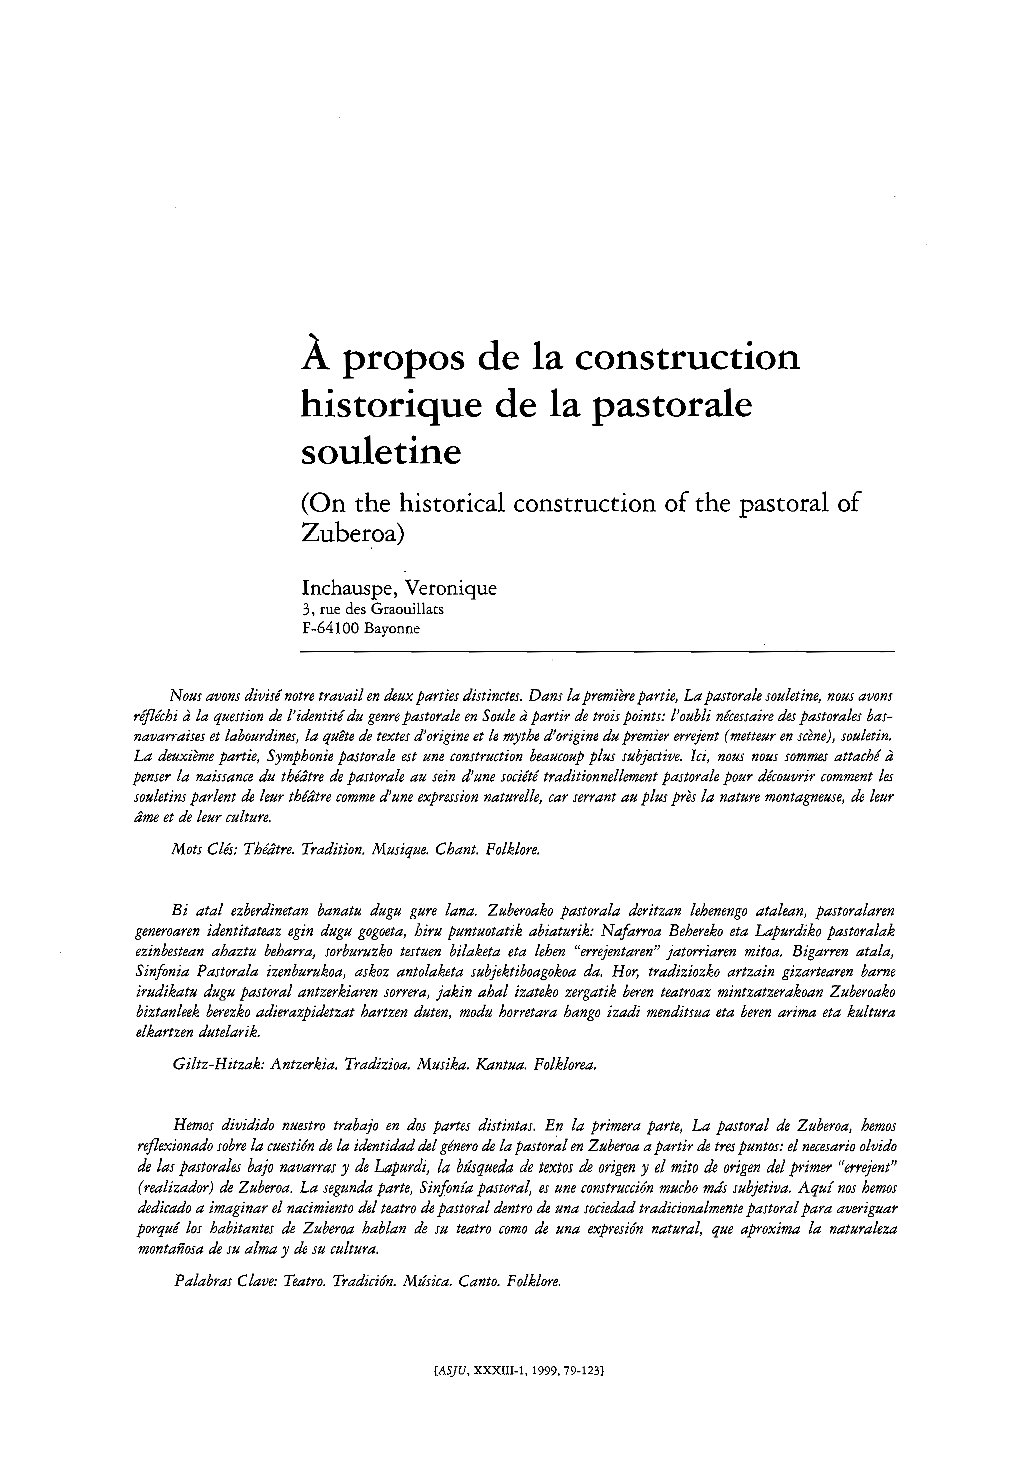 Apropos De La Construction Historique De La Pastorale Souletine (On the Historical Construction of the Pastoral of Zuber,Oa)